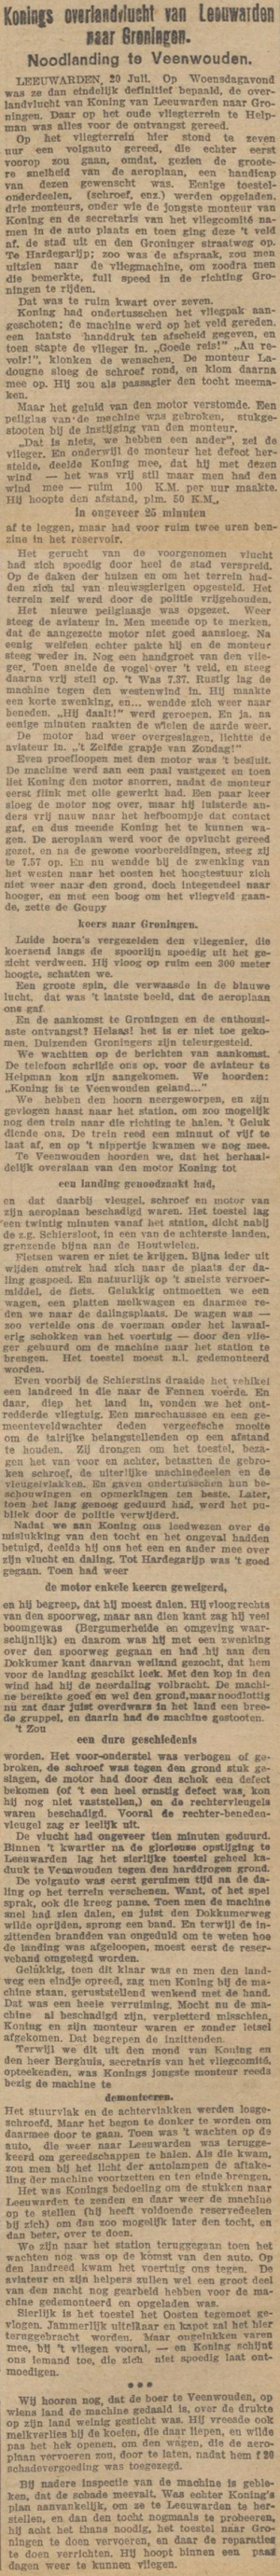 Nieuwsblad van Friesland : Hepkema's courant, 22 juli 1911